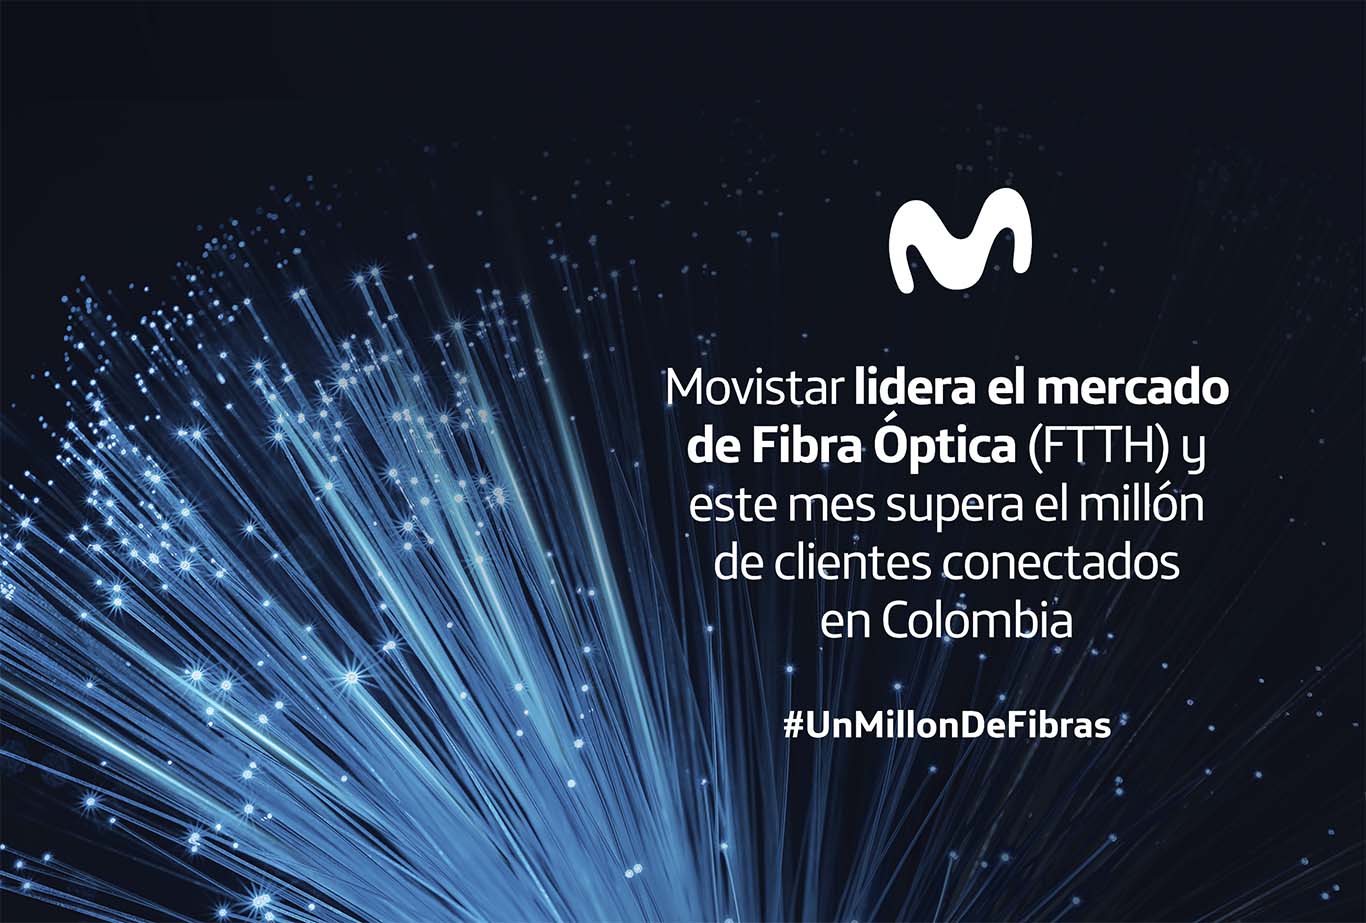 Movistar lidera el mercado de Fibra Óptica en Colombia